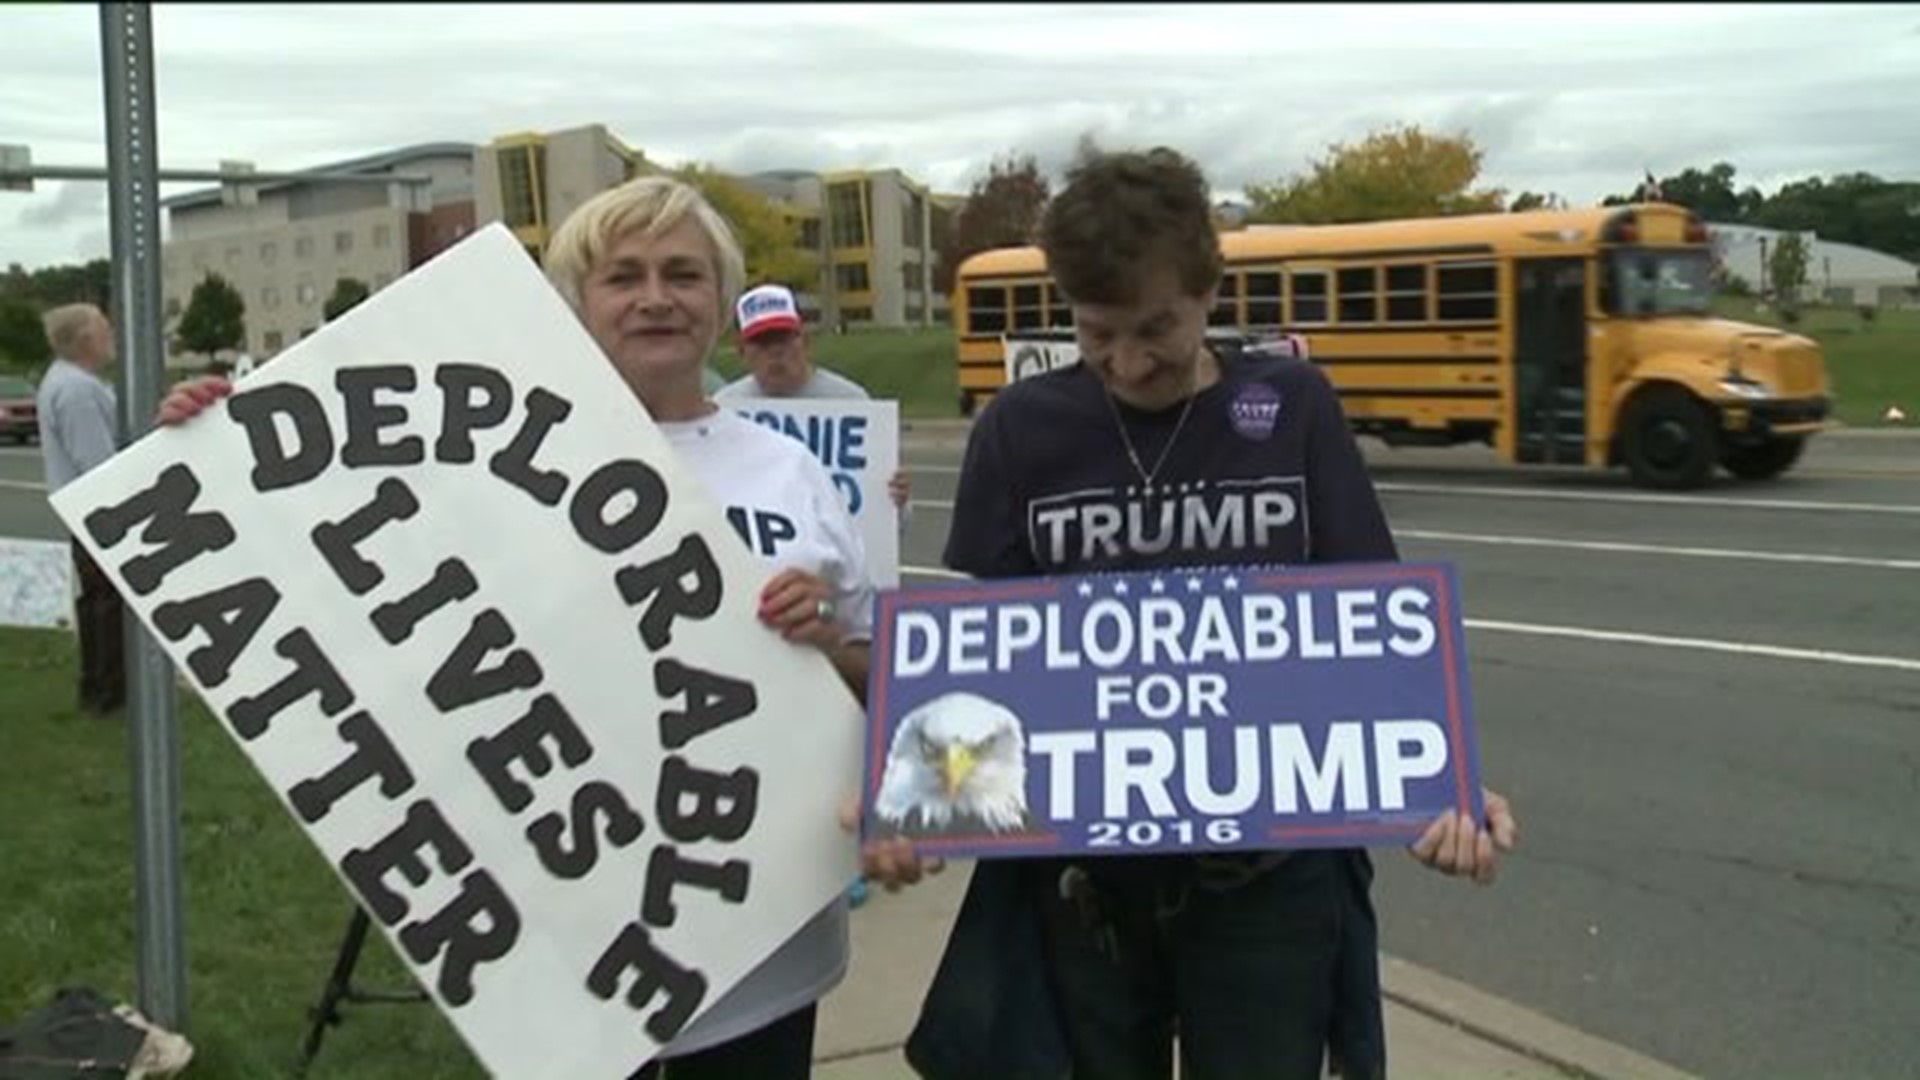 Trump Supporters Gather in Scranton